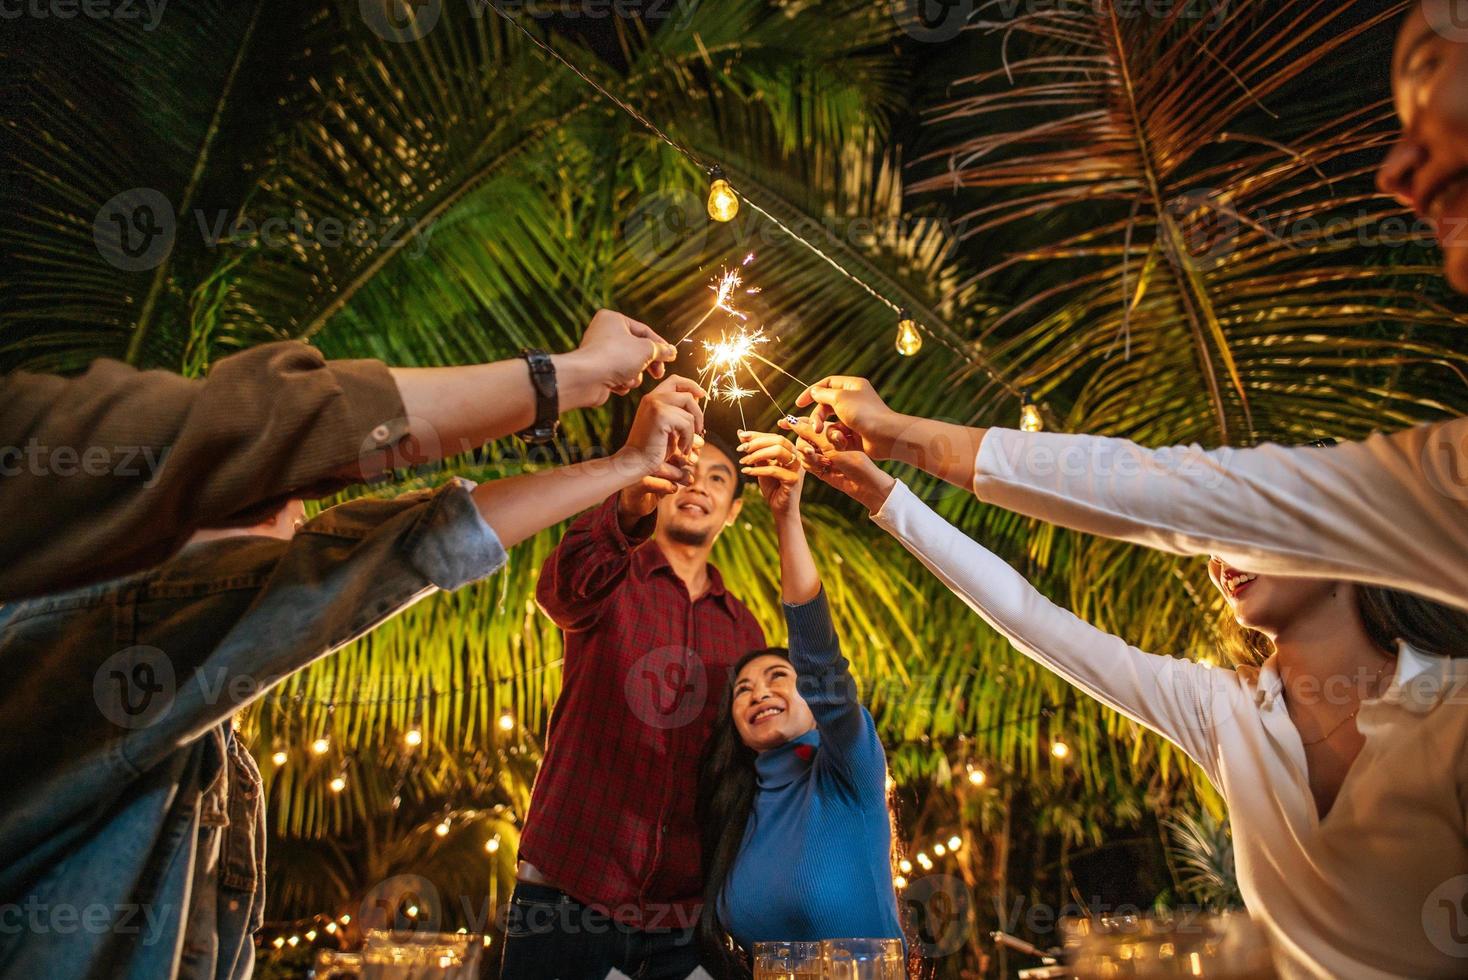 retrato de feliz grupo asiático de amigos se divertindo com estrelinhas ao ar livre - jovens se divertindo com fogos de artifício durante a noite - pessoas, comida, estilo de vida de bebida, conceito de celebração de ano novo. foto